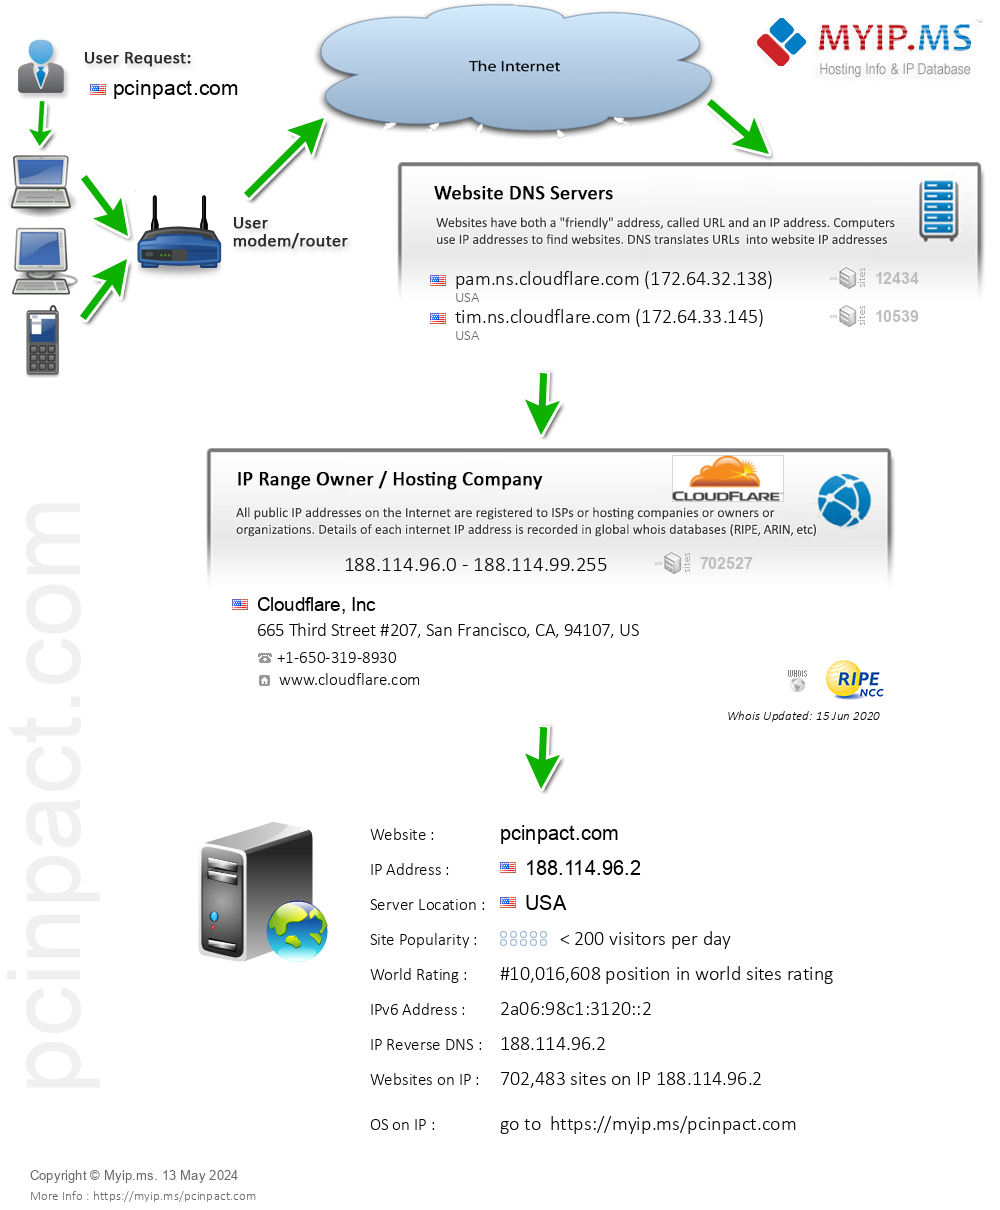 Pcinpact.com - Website Hosting Visual IP Diagram